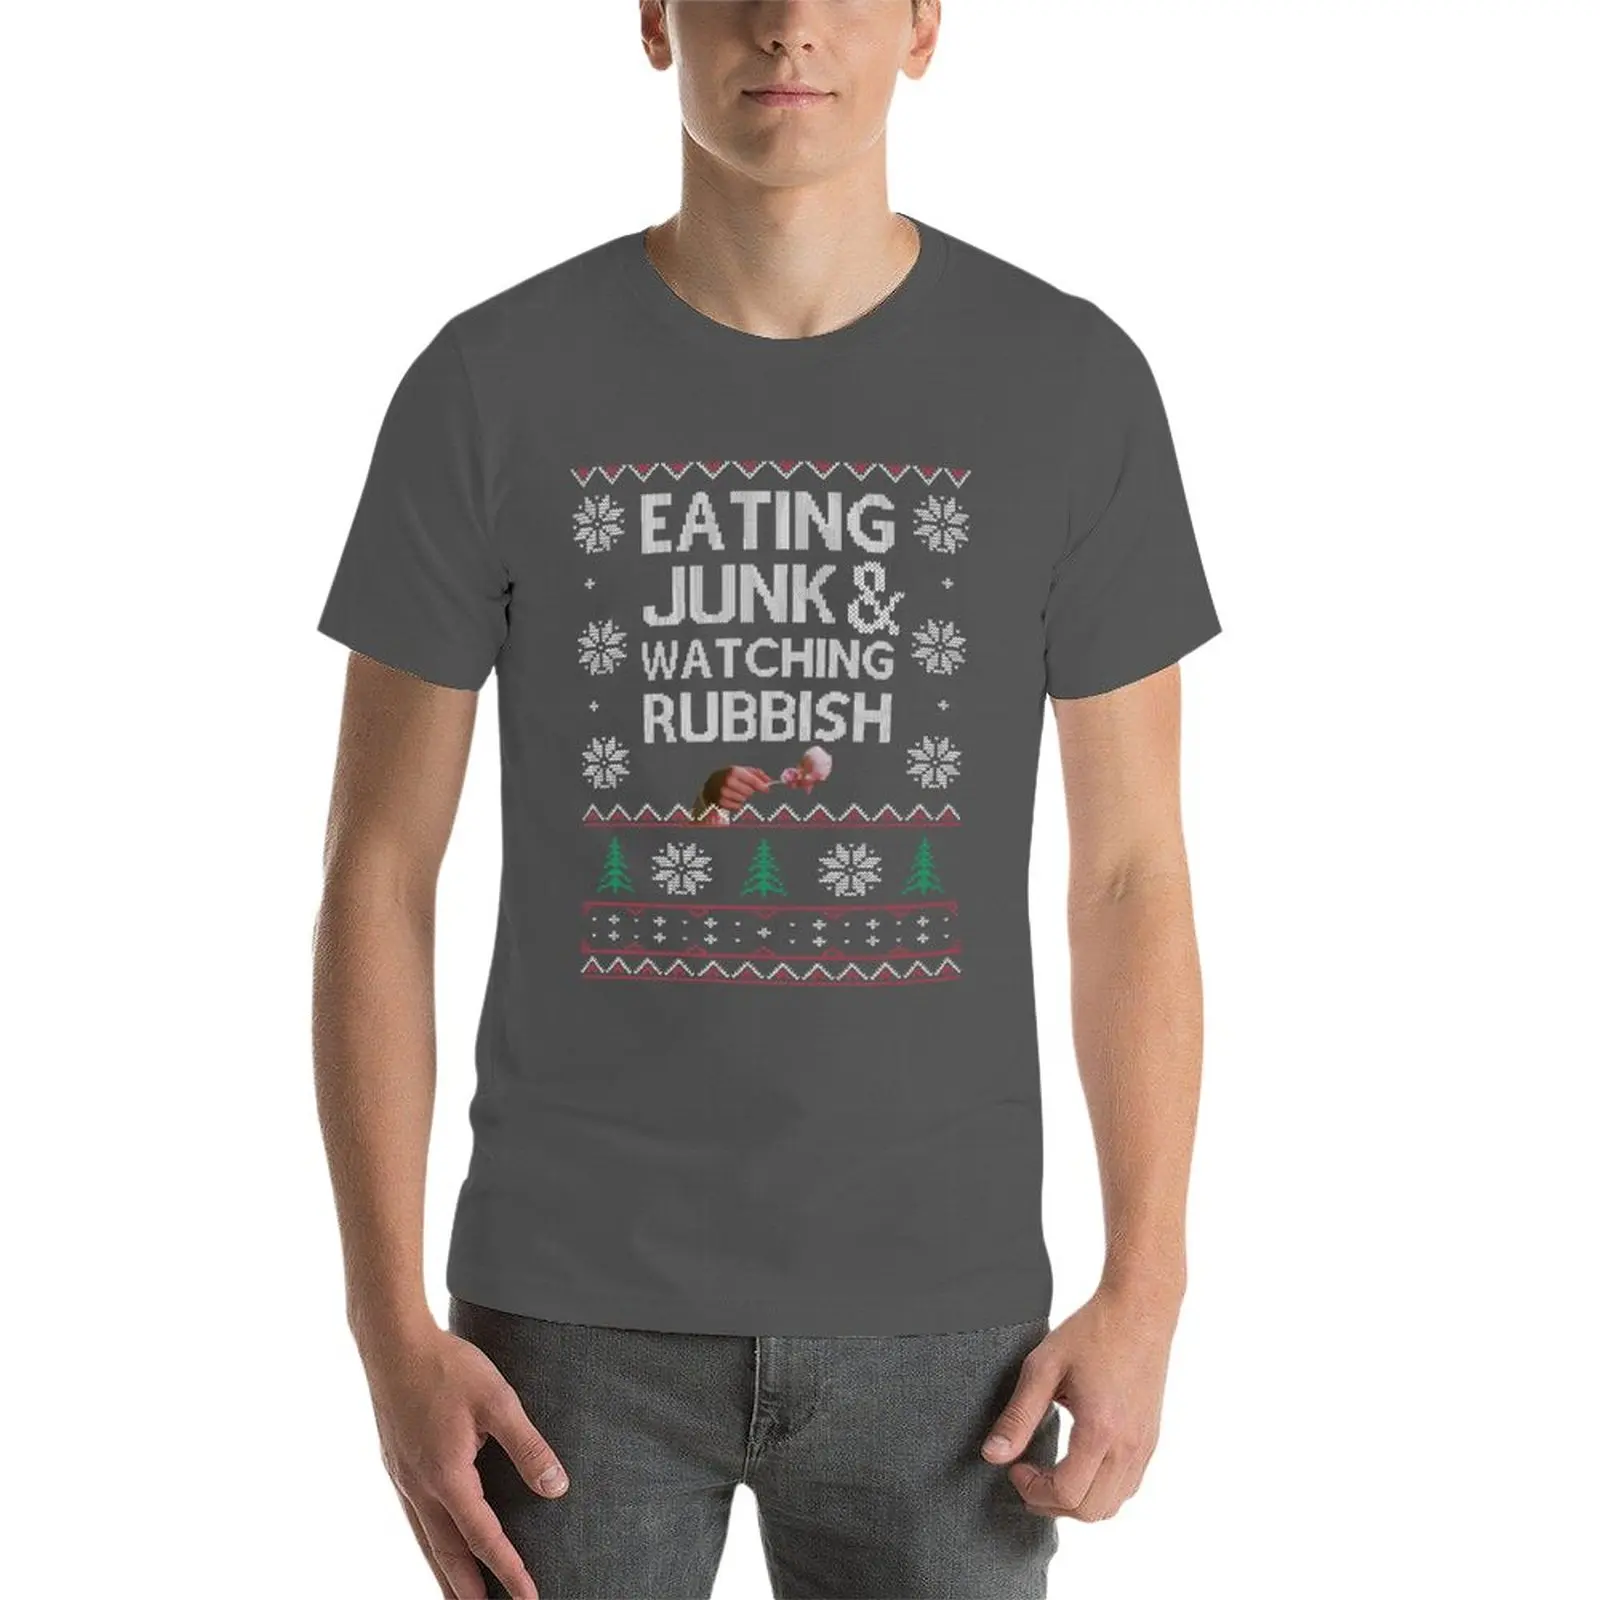 Футболка Eating Junk & Watching Garbish, черная футболка, футболка с коротким рукавом, мужские высокие футболки Изображение 2